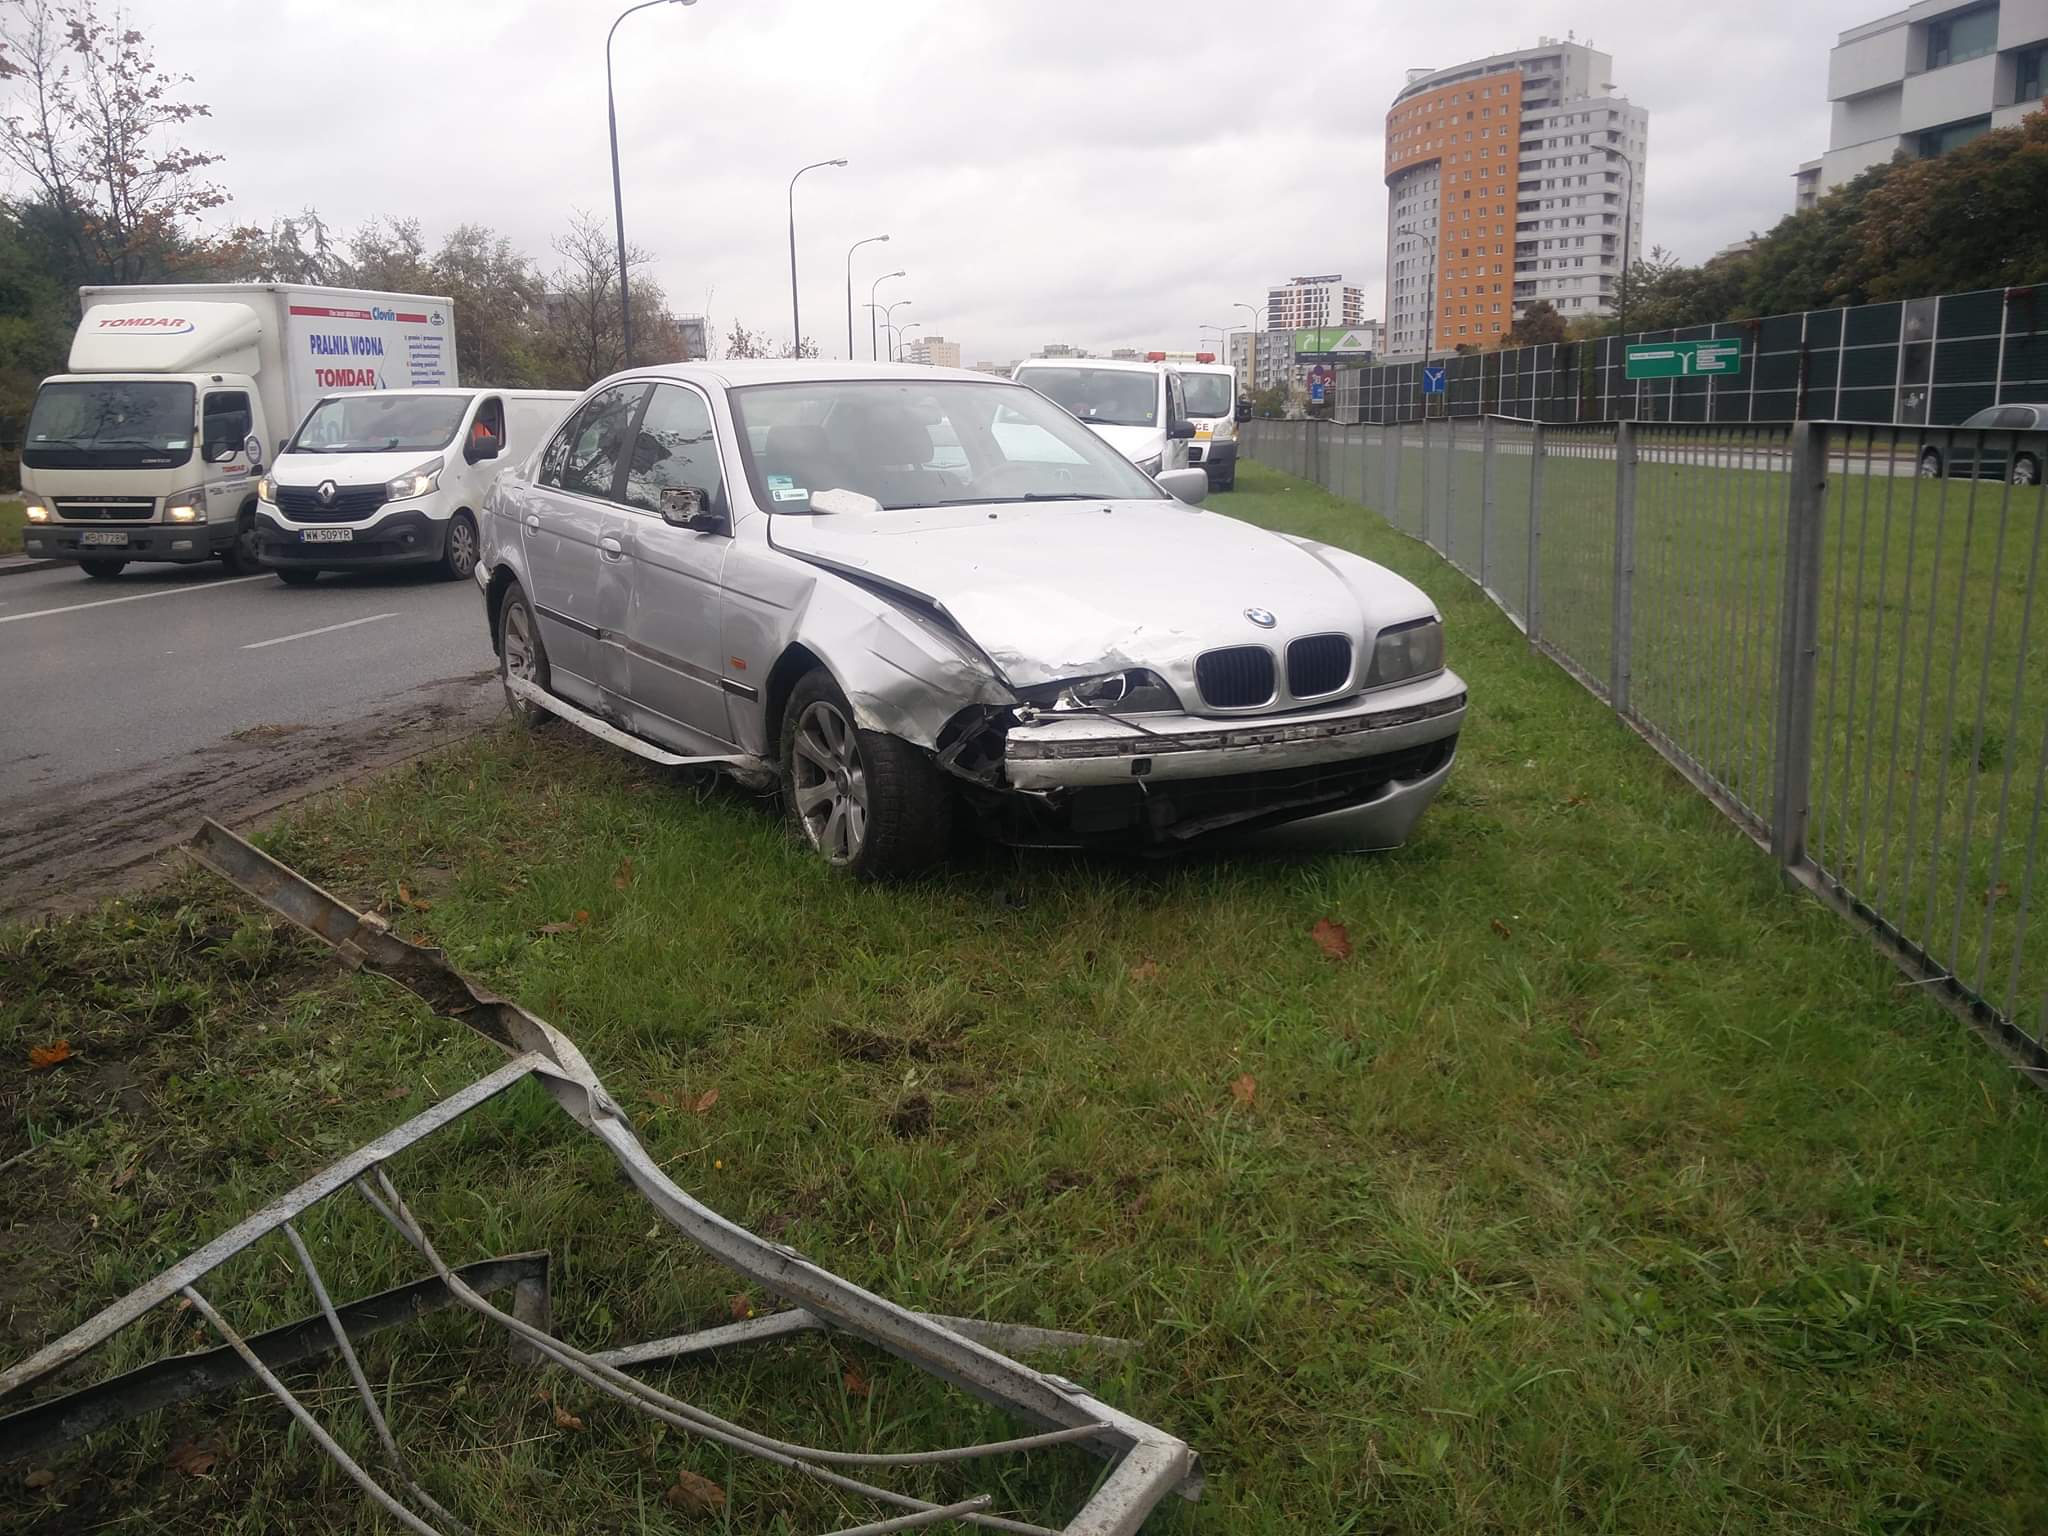 Kierujący BMW wpadł w poślizg i przeleciał autem na drugą